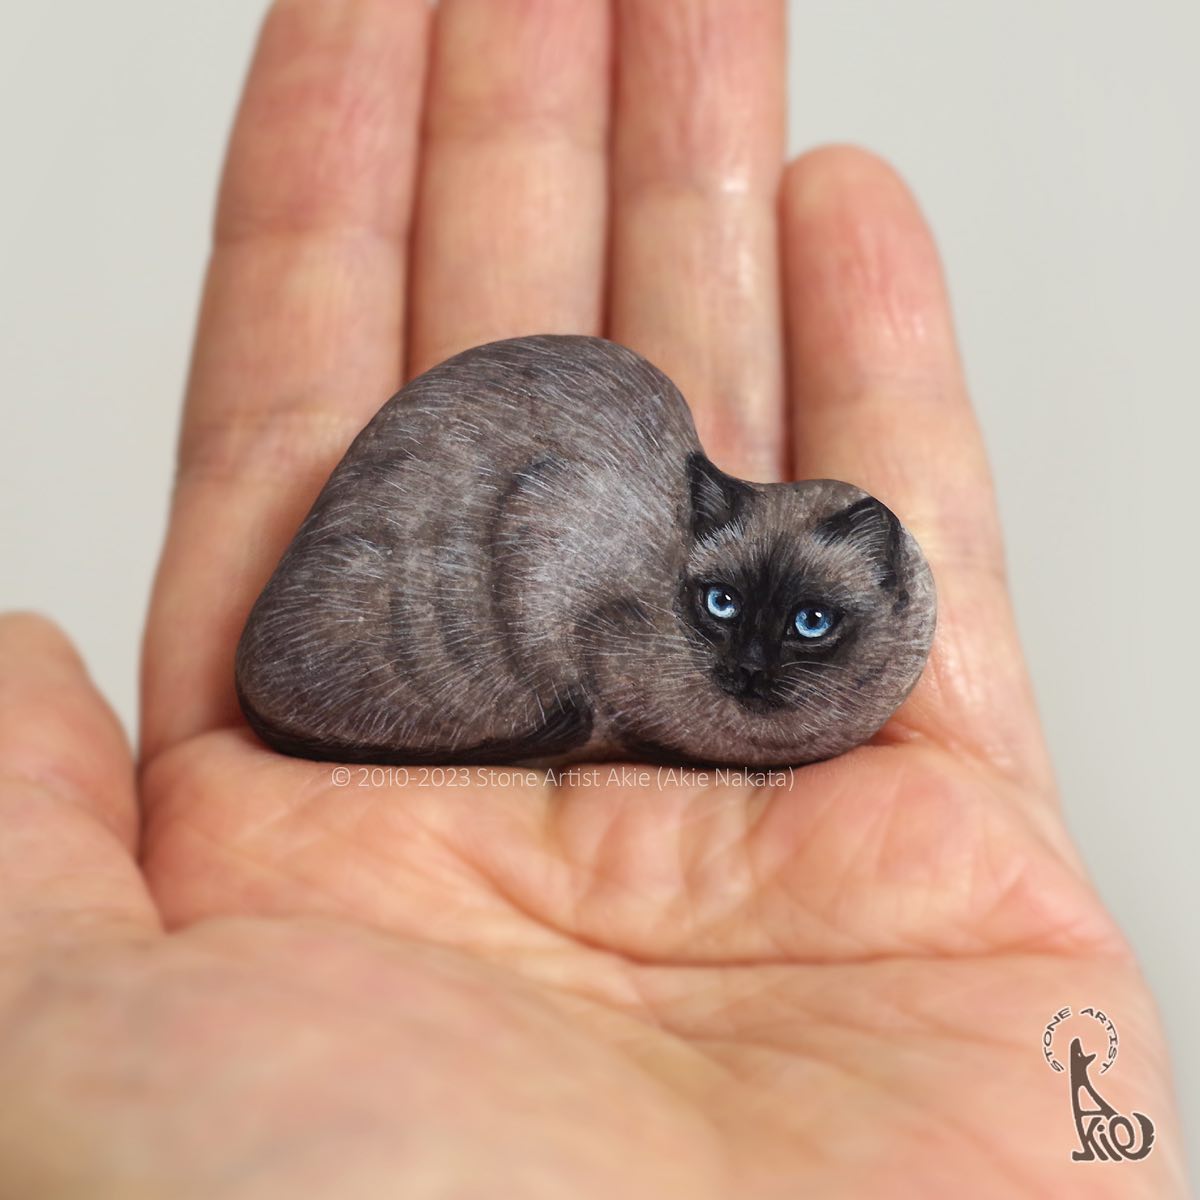 Japanese Artist Akie Nakata Turns Rocks Into Cute Little Animals 